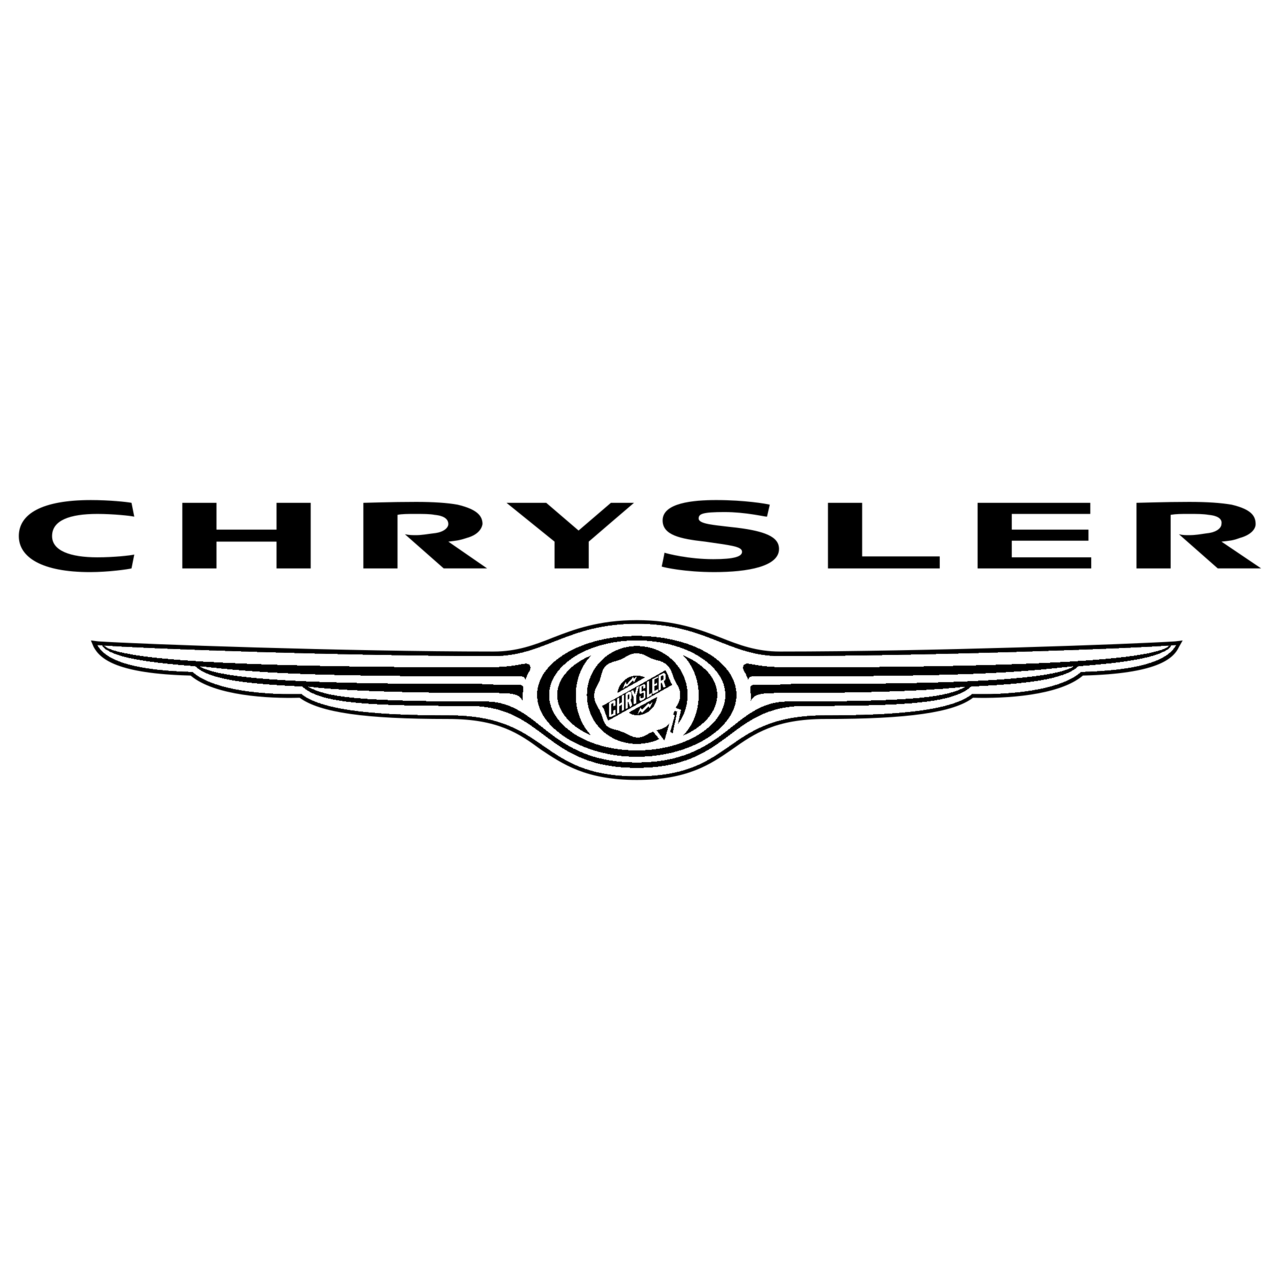 chrysler-logo-black-and-white